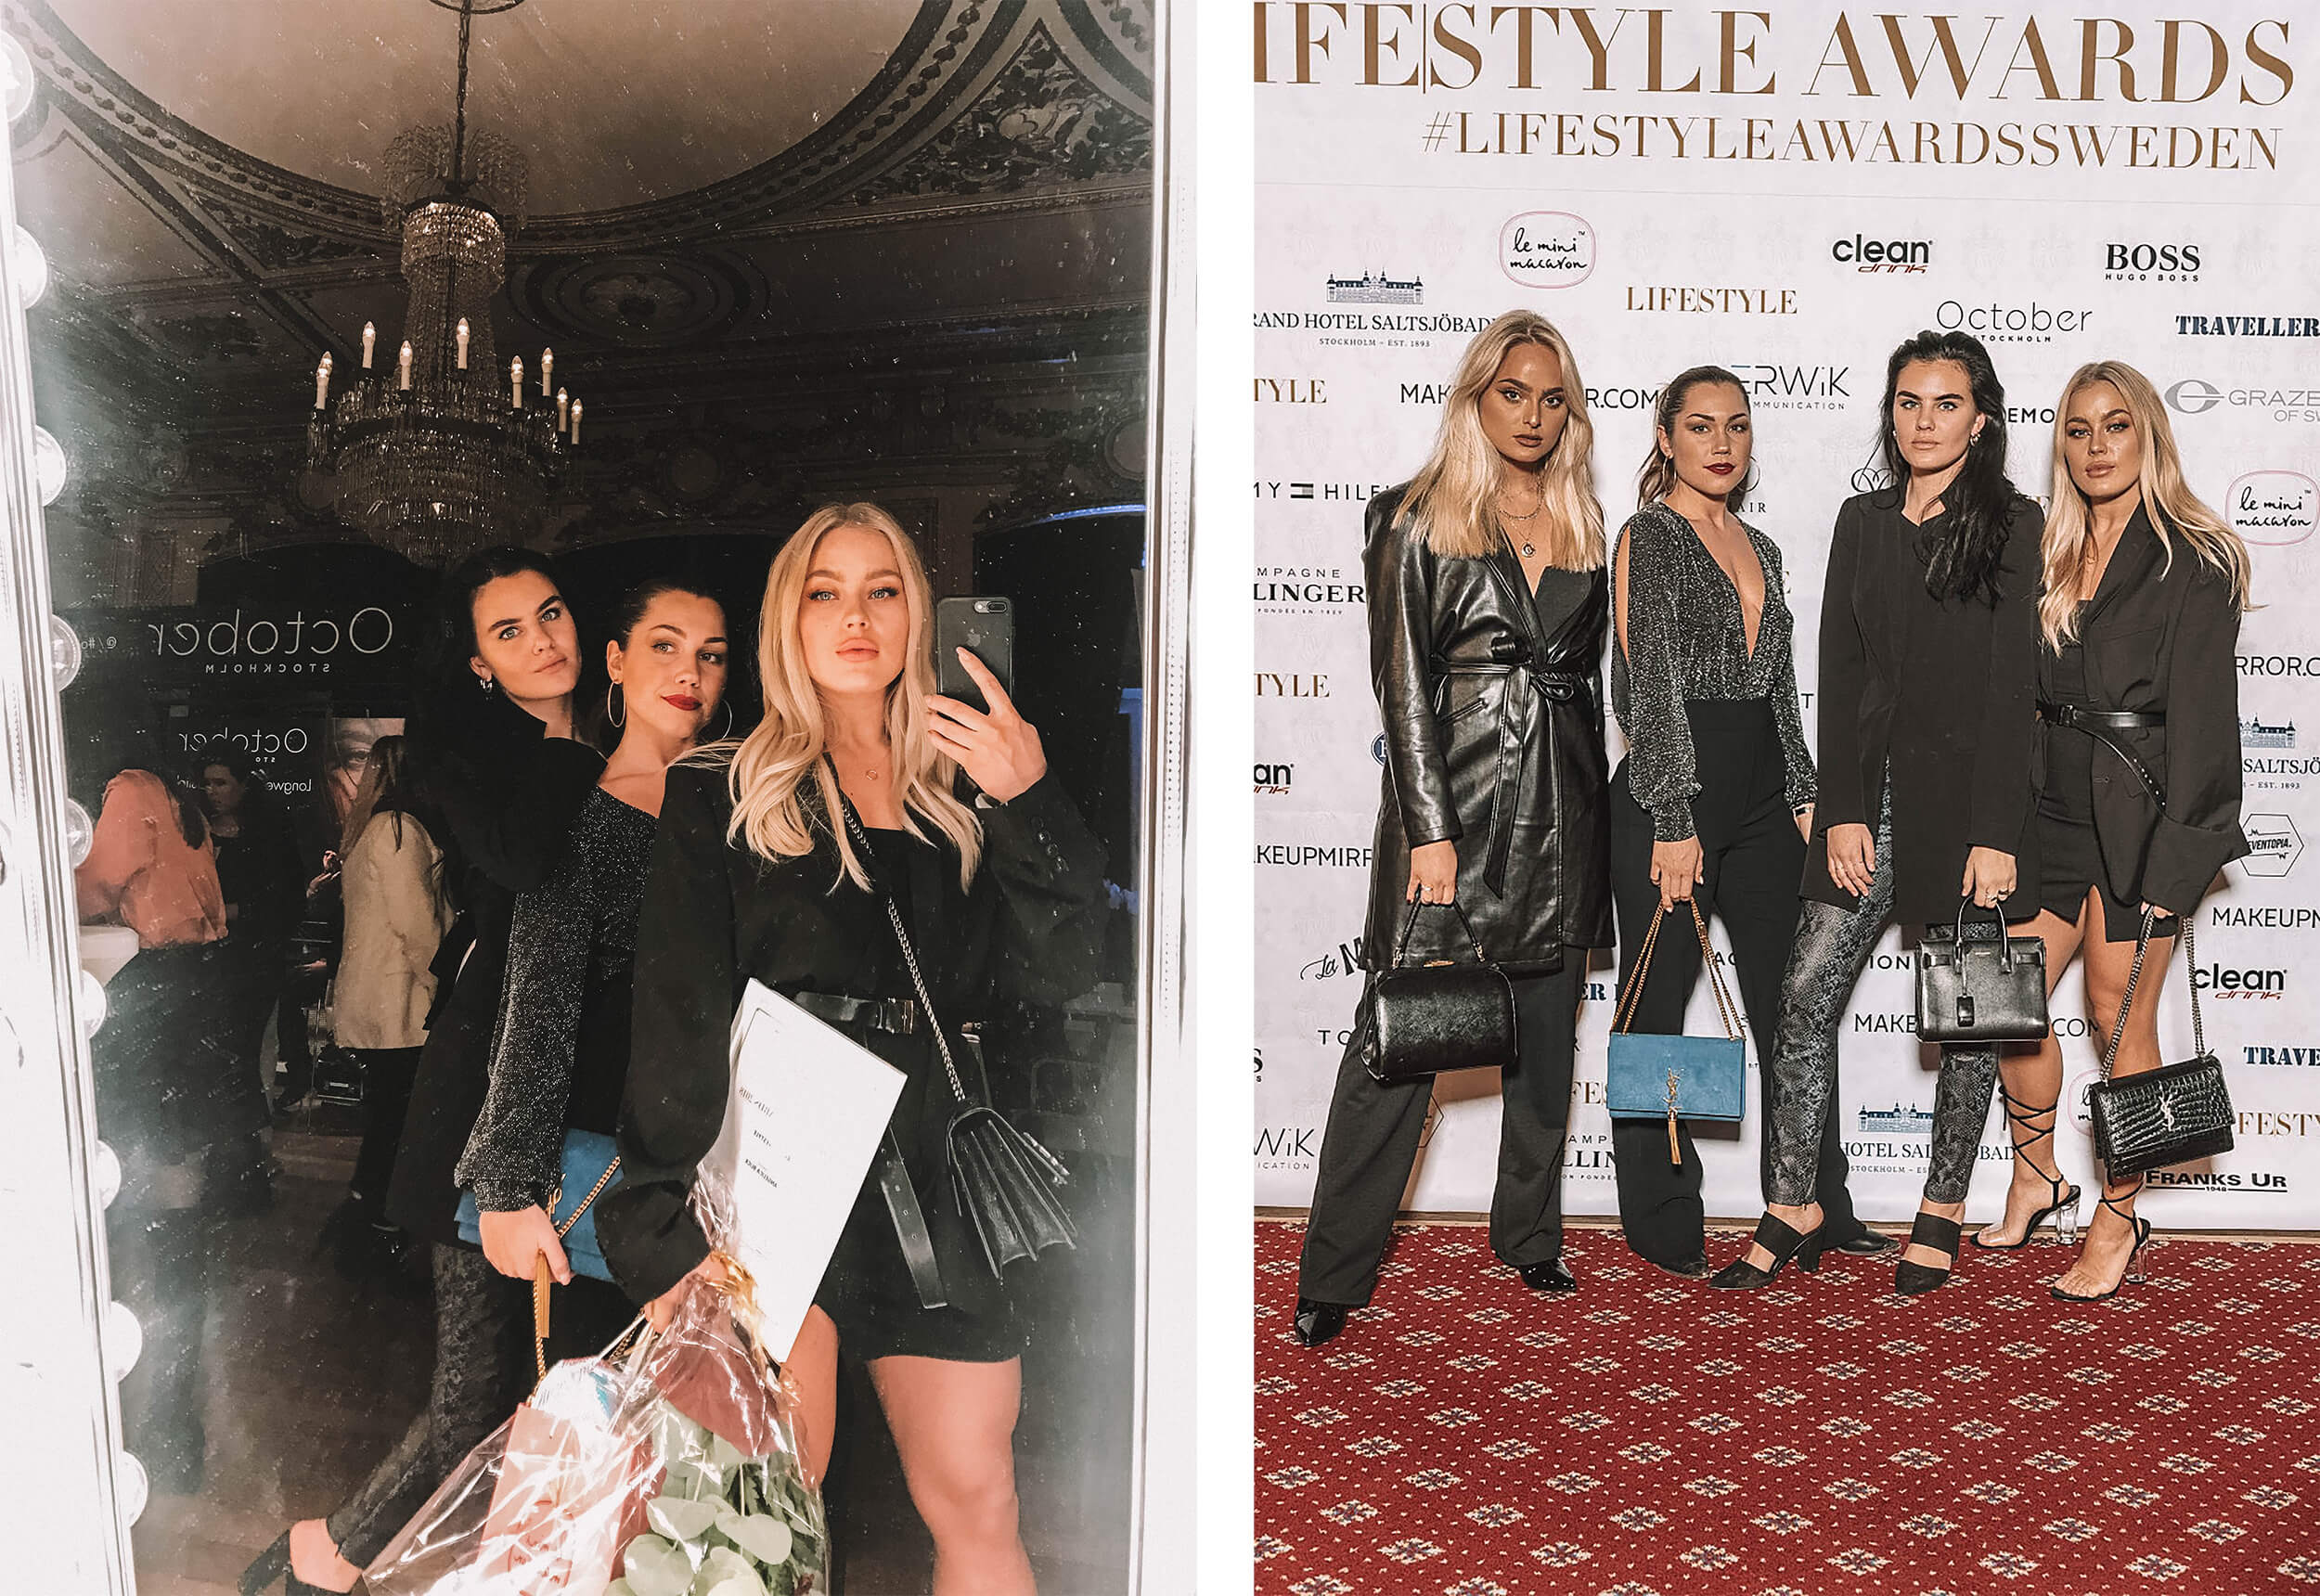 Lifestyle awards 2018